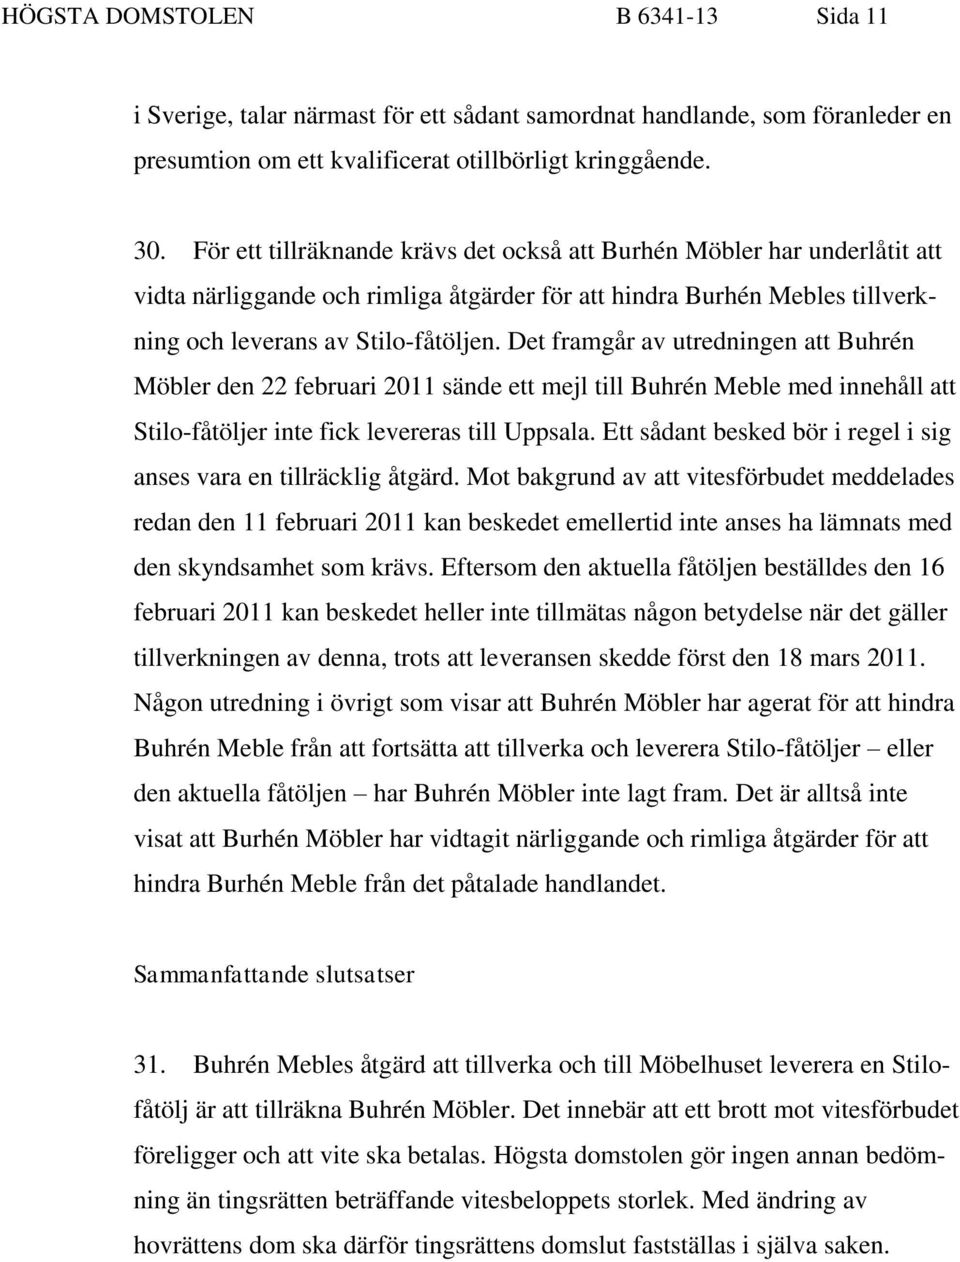 Det framgår av utredningen att Buhrén Möbler den 22 februari 2011 sände ett mejl till Buhrén Meble med innehåll att Stilo-fåtöljer inte fick levereras till Uppsala.